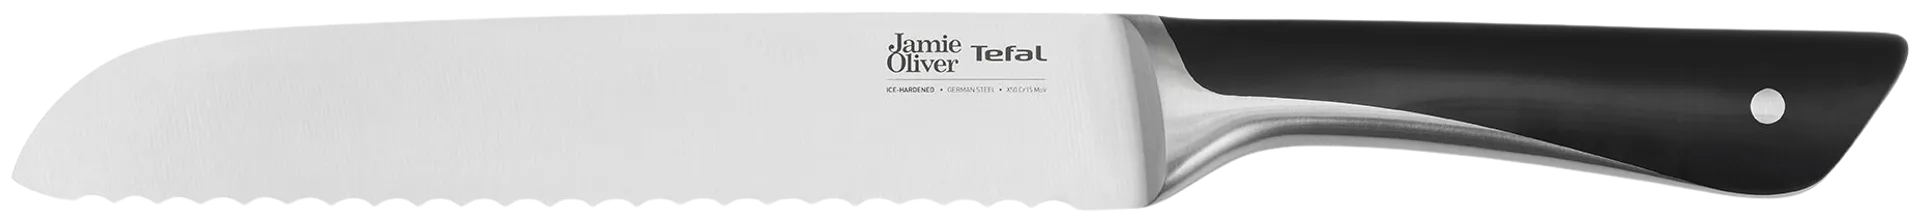 Tefal Jamie Oliver leipäveitsi 20 cm - 1